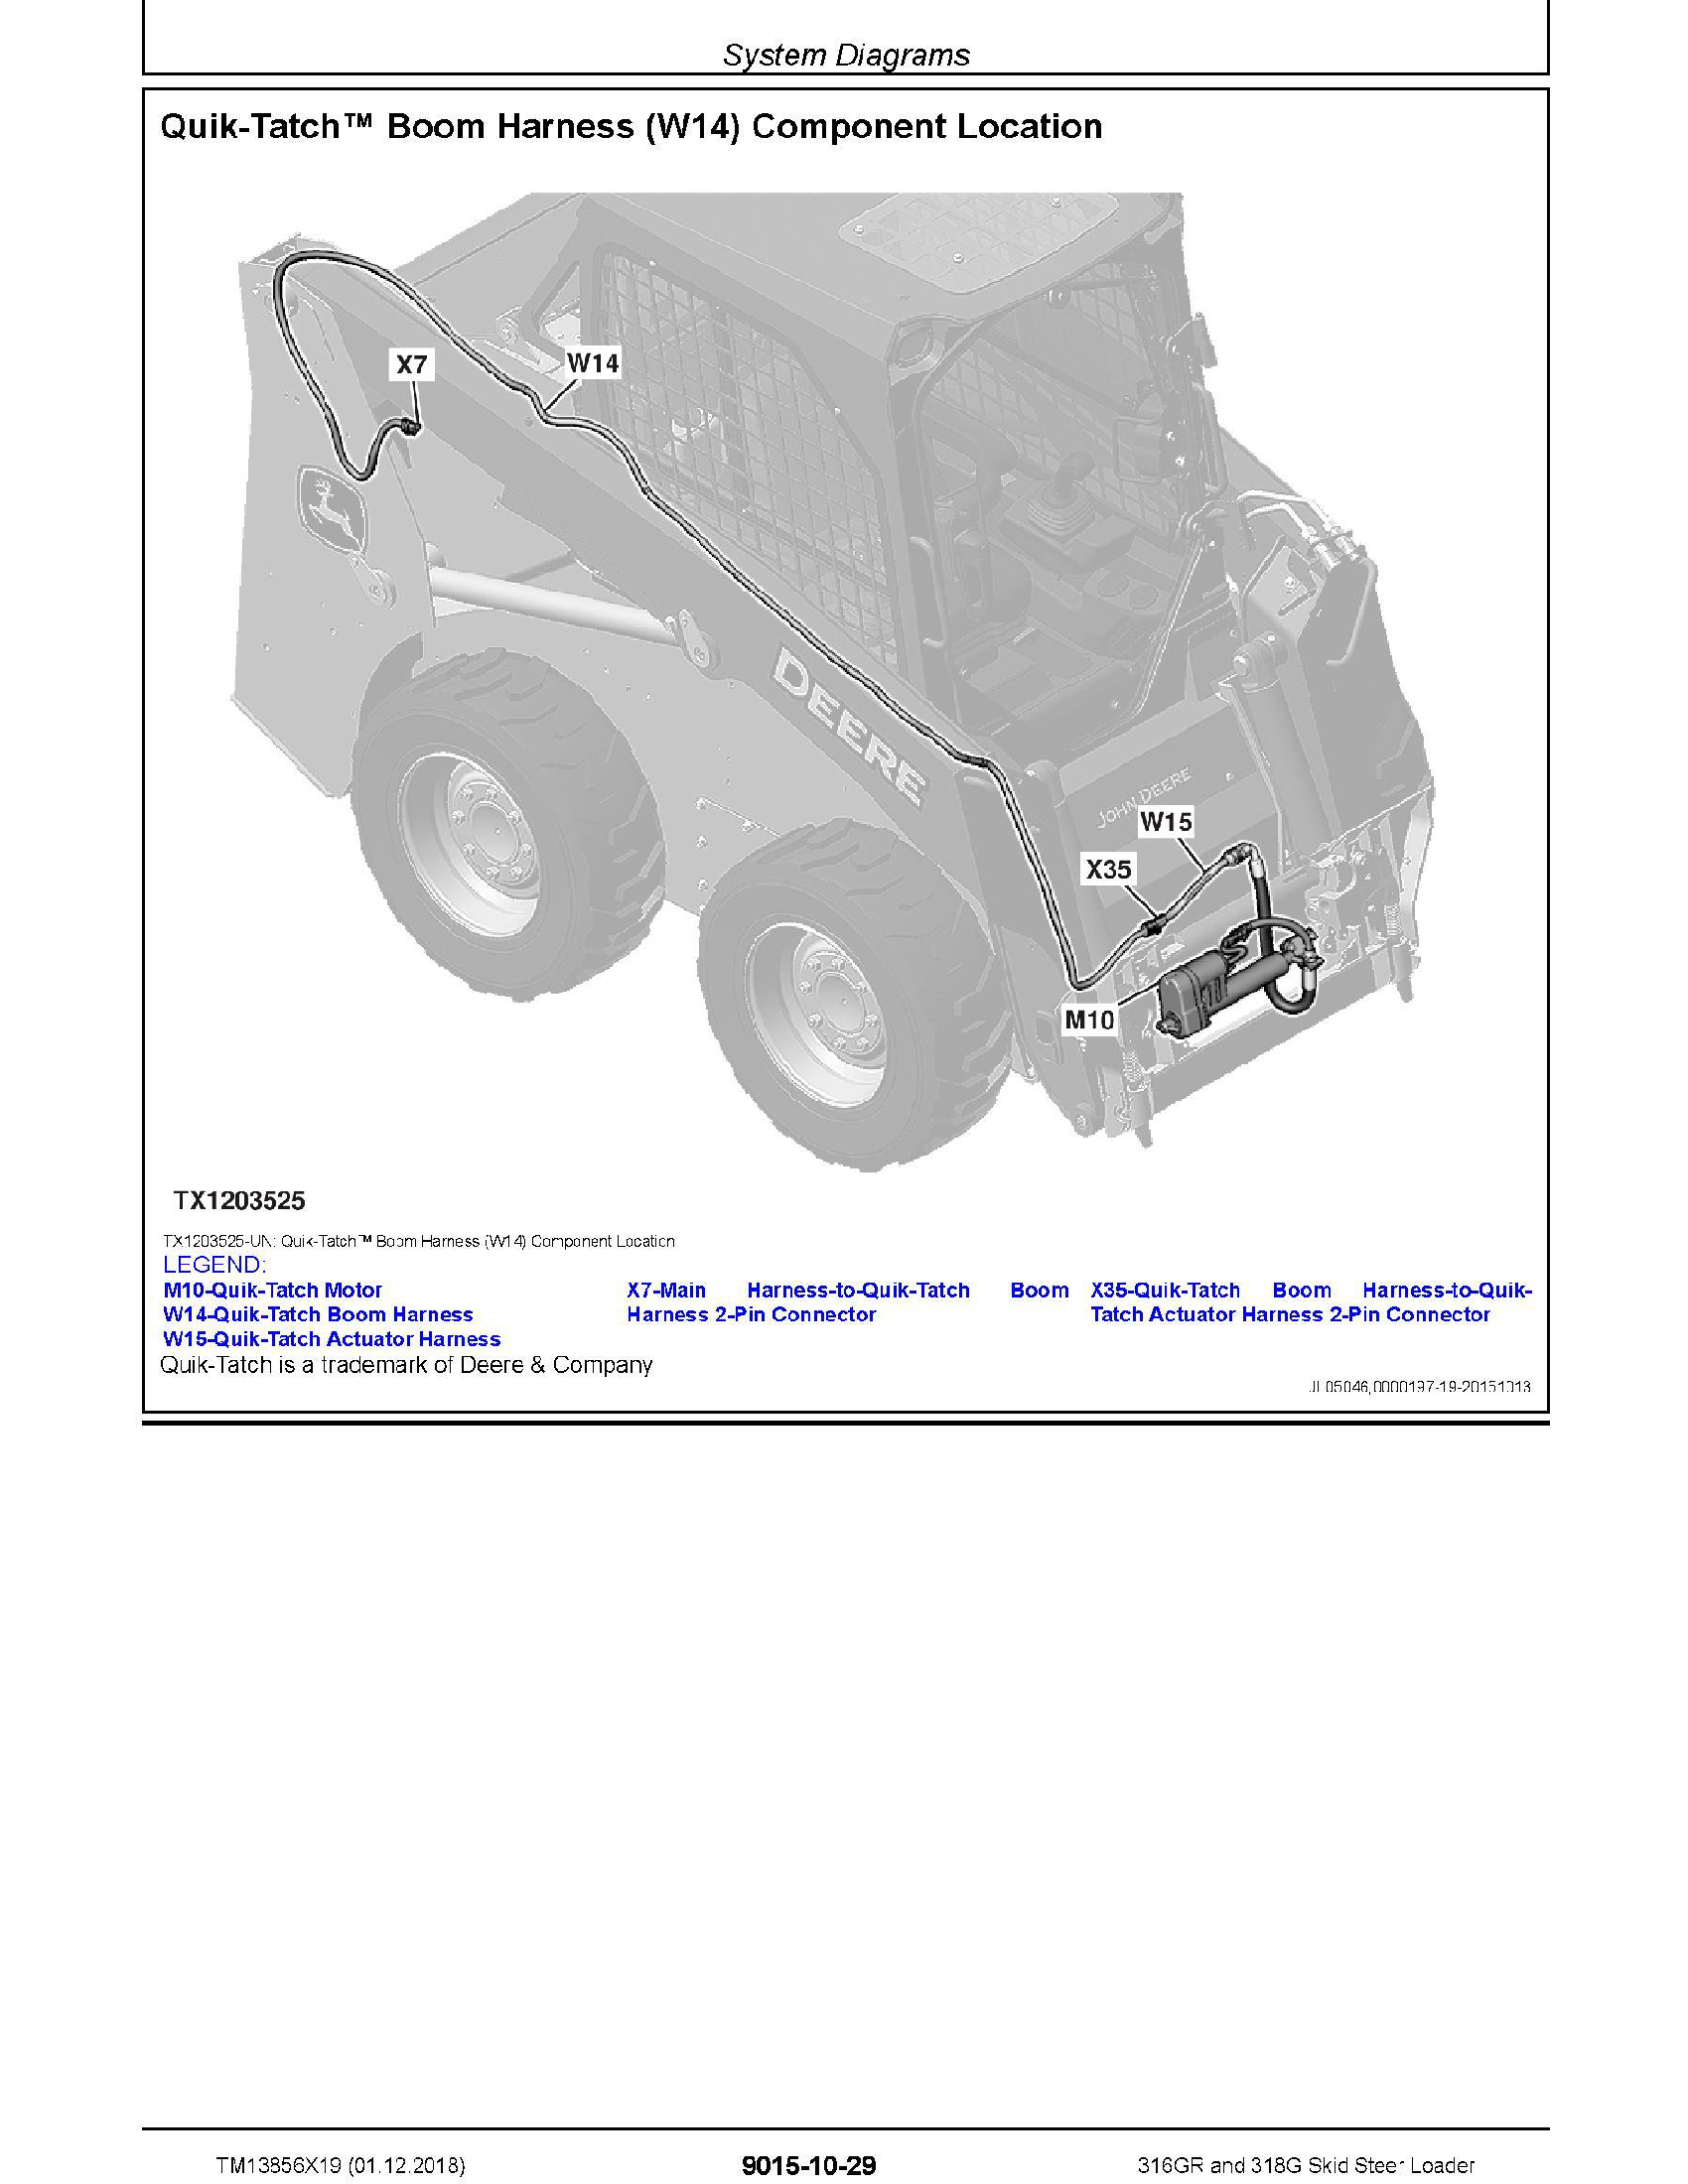 John Deere 5100E manual pdf